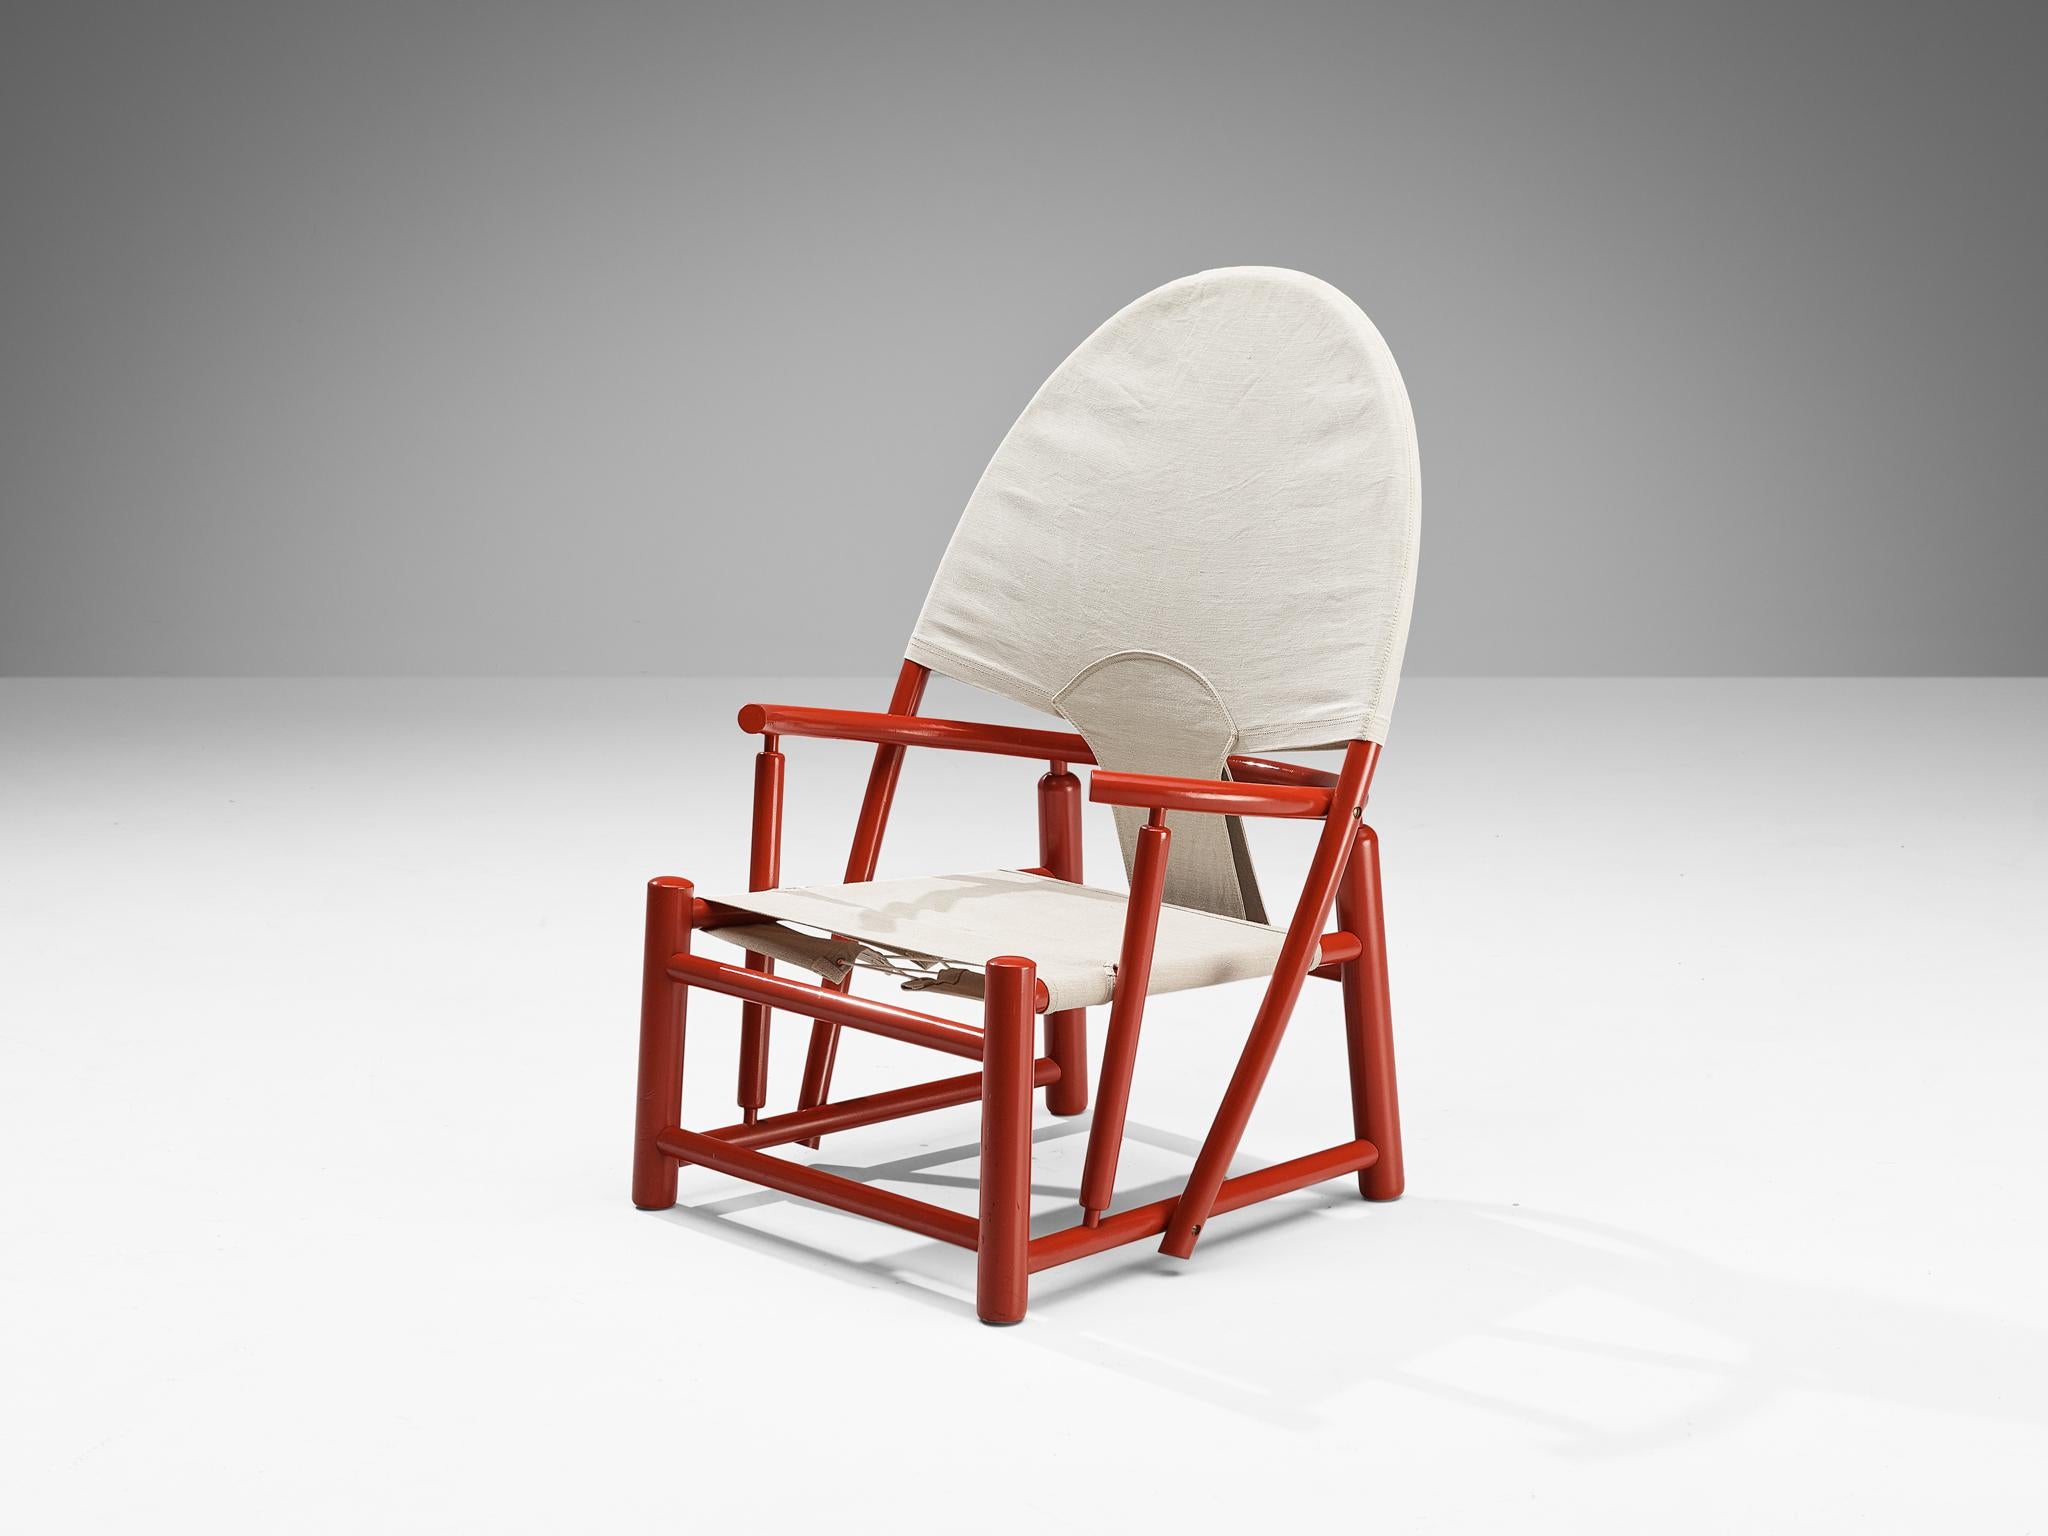 Werther Toffoloni & Piero Palange Paire de chaises rouges 